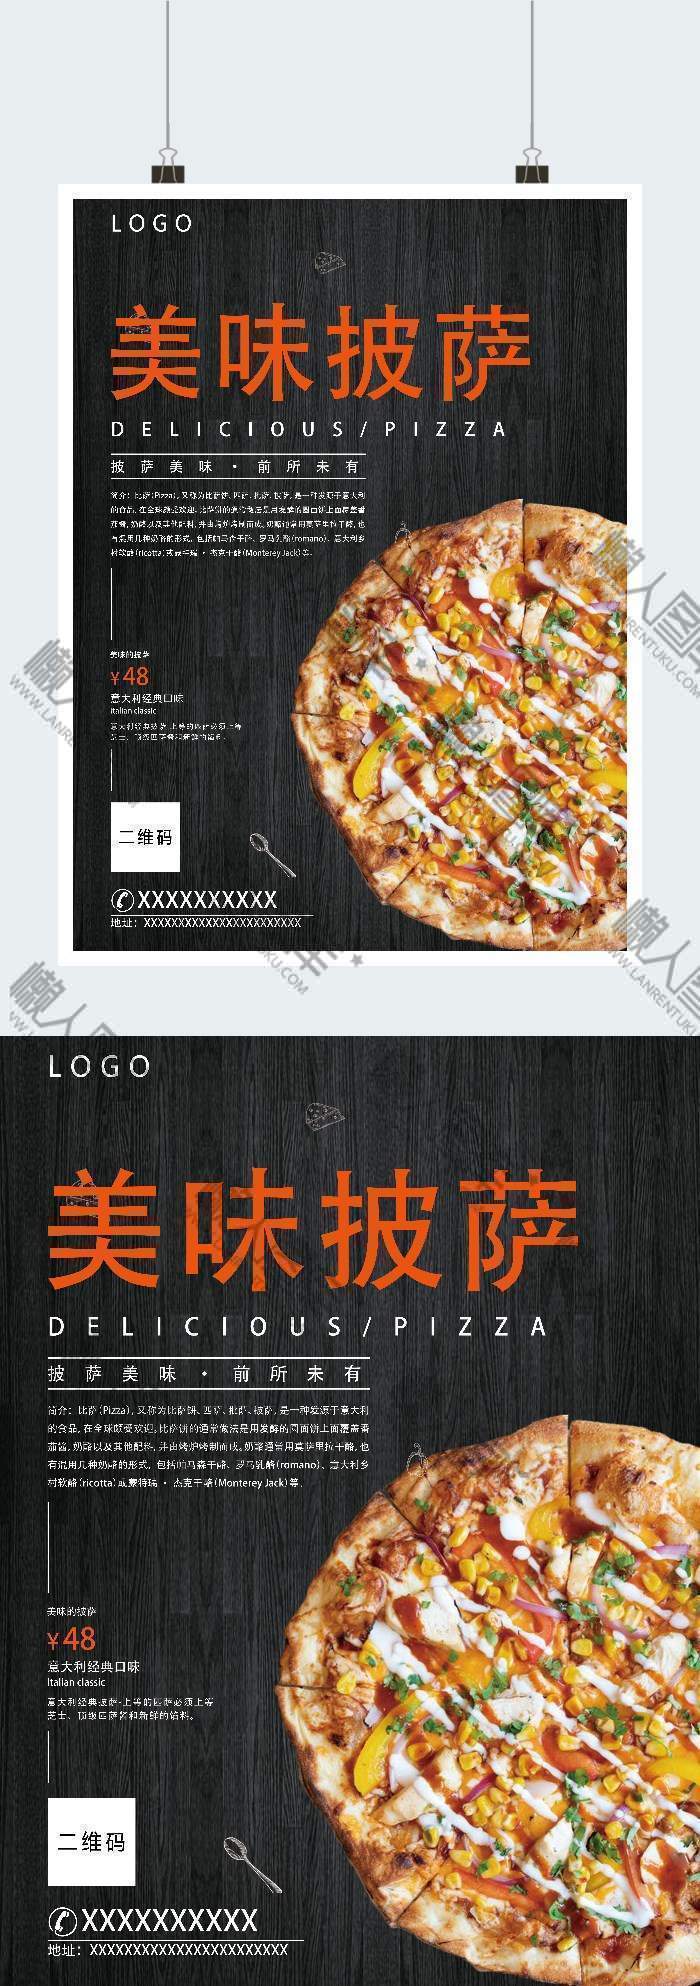 意大利经典美味披萨宣传广告海报